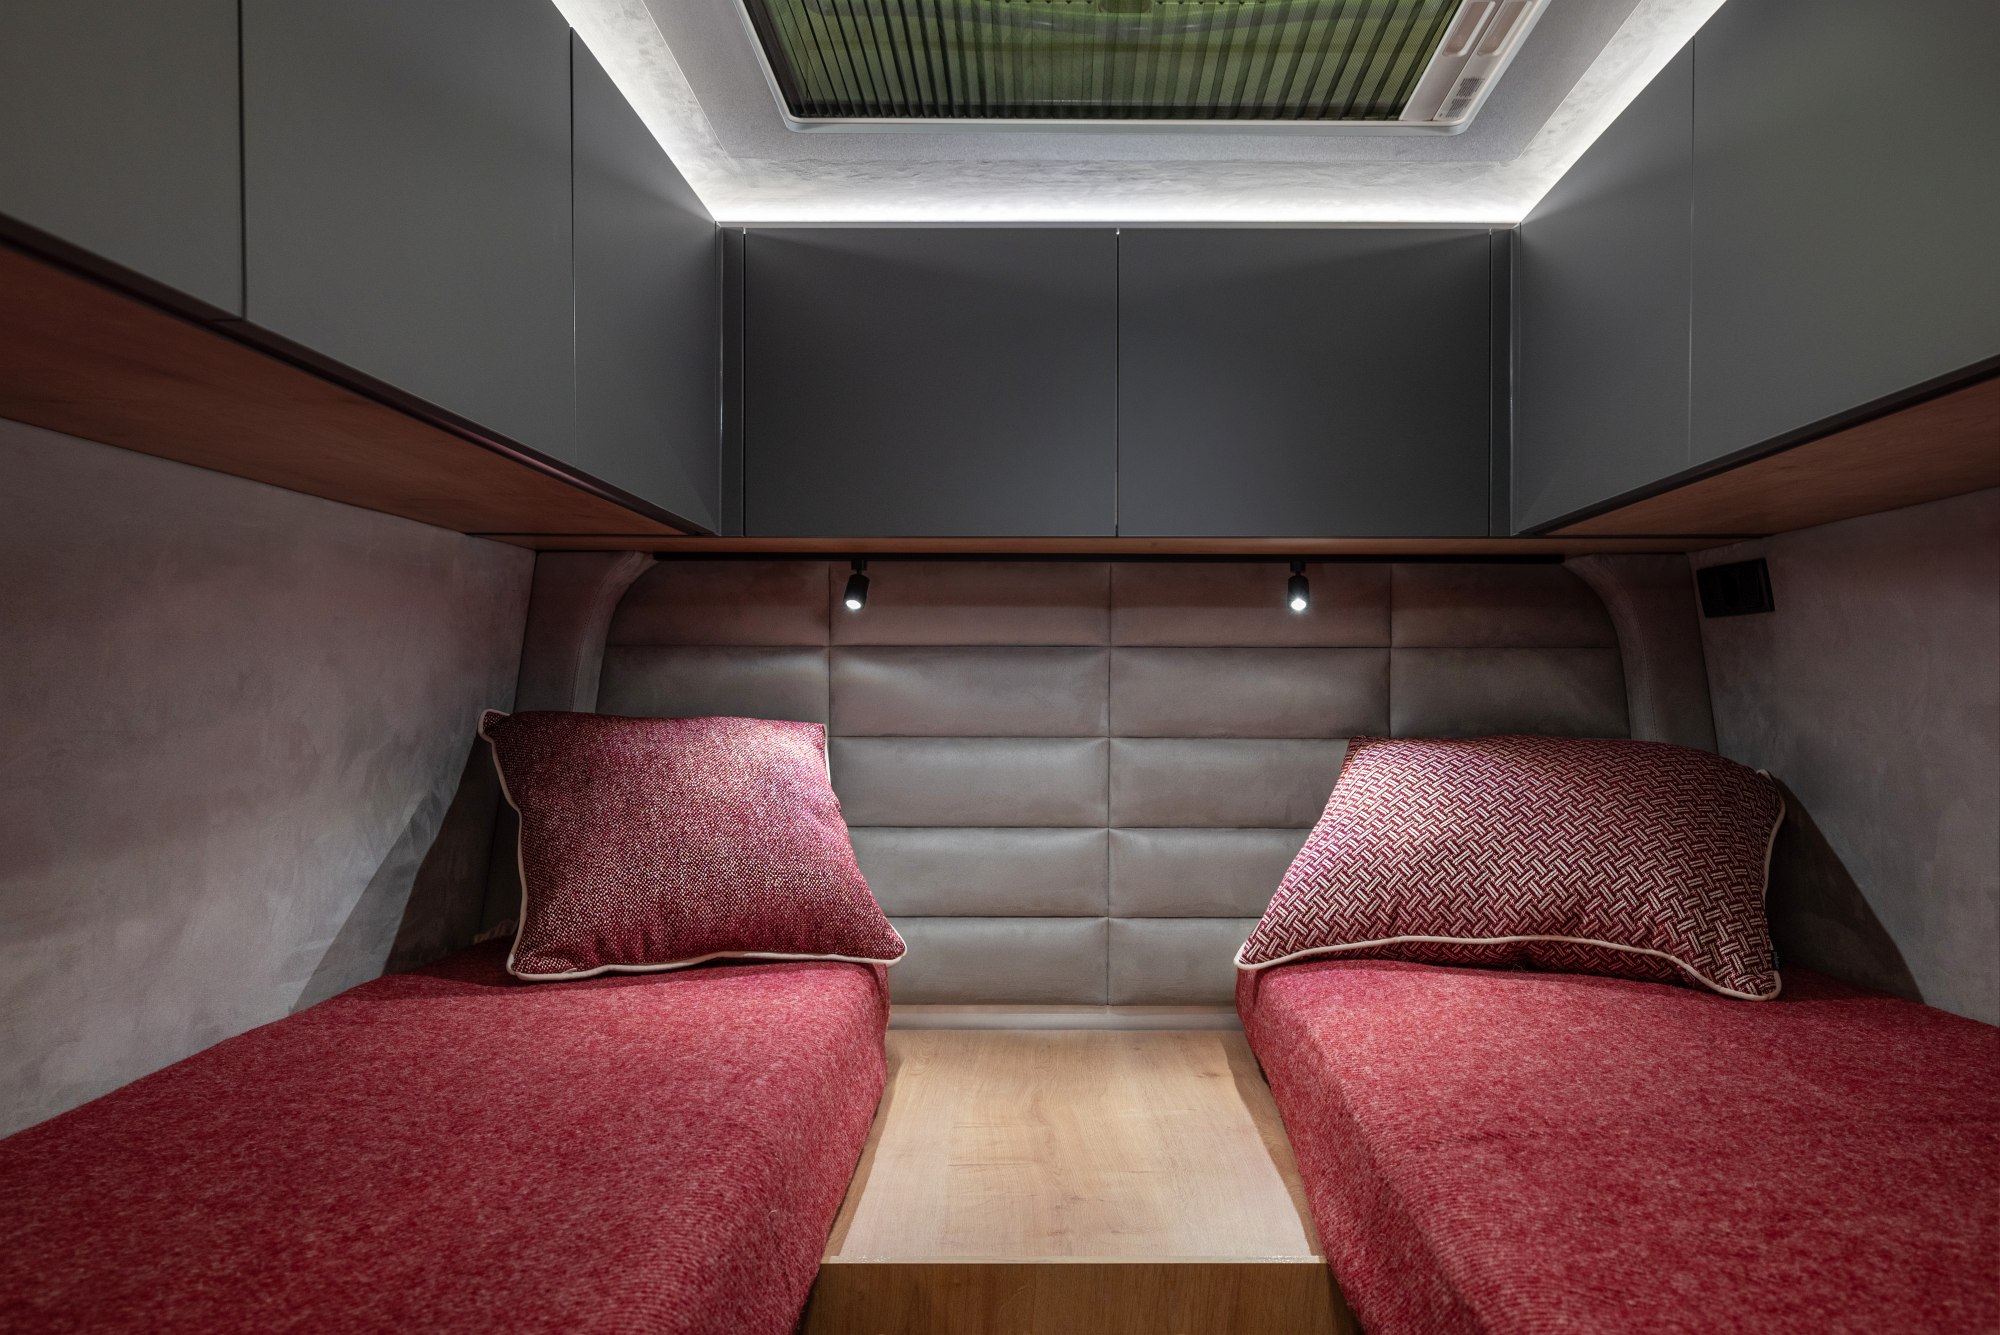 Bedrooms in the Globe Traveler Falcon 2Z